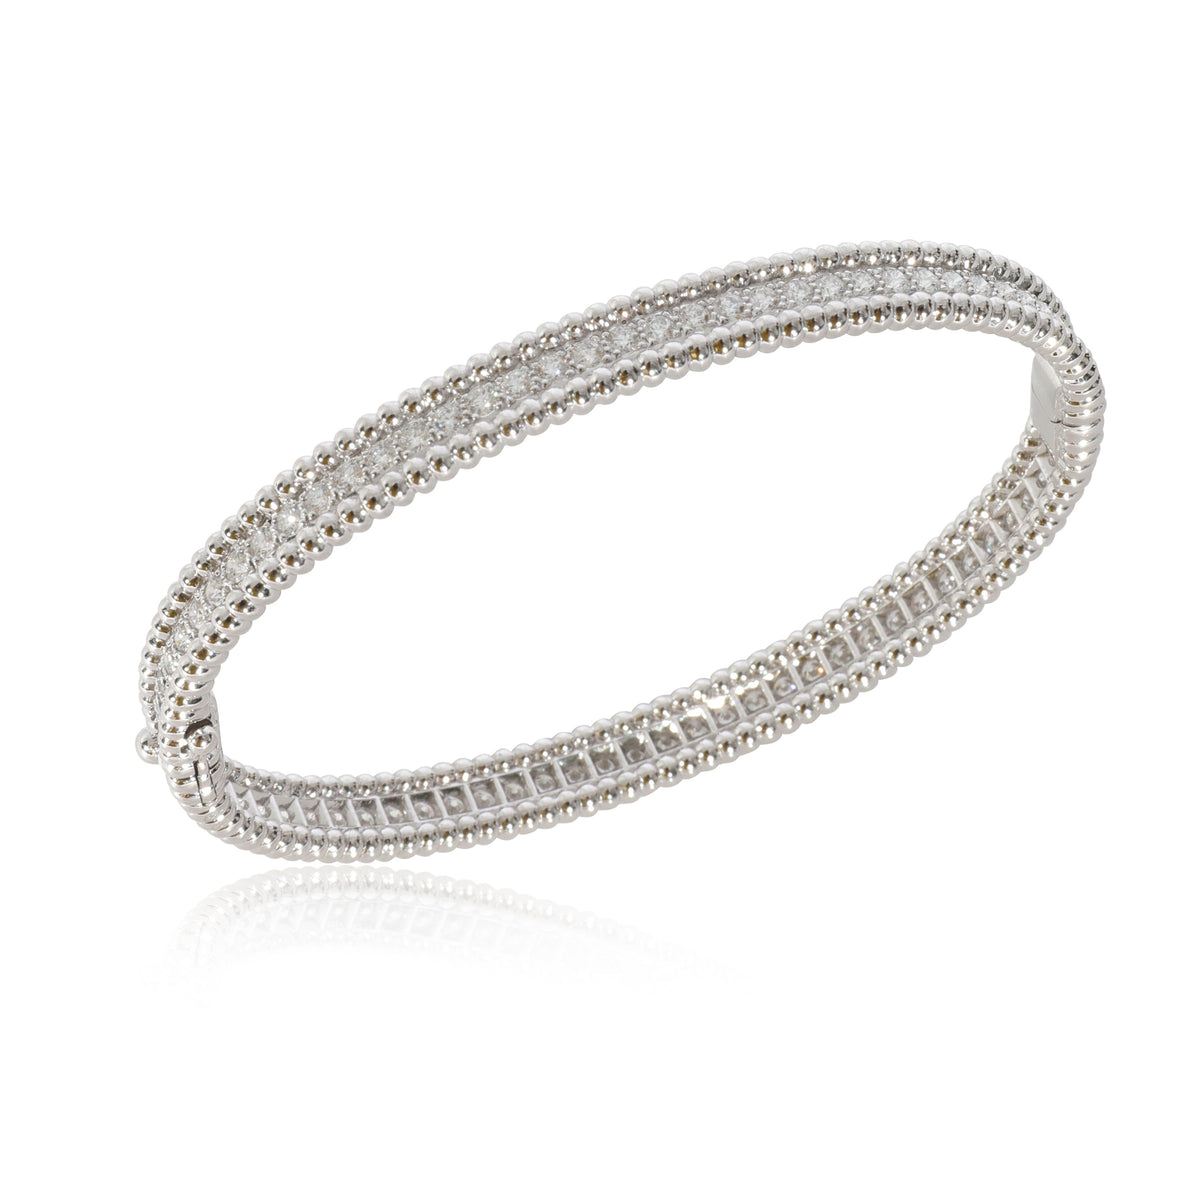 Van Cleef & Arpels Perlee Diamond Bracelet in 18K White Gold 2.16 CTW